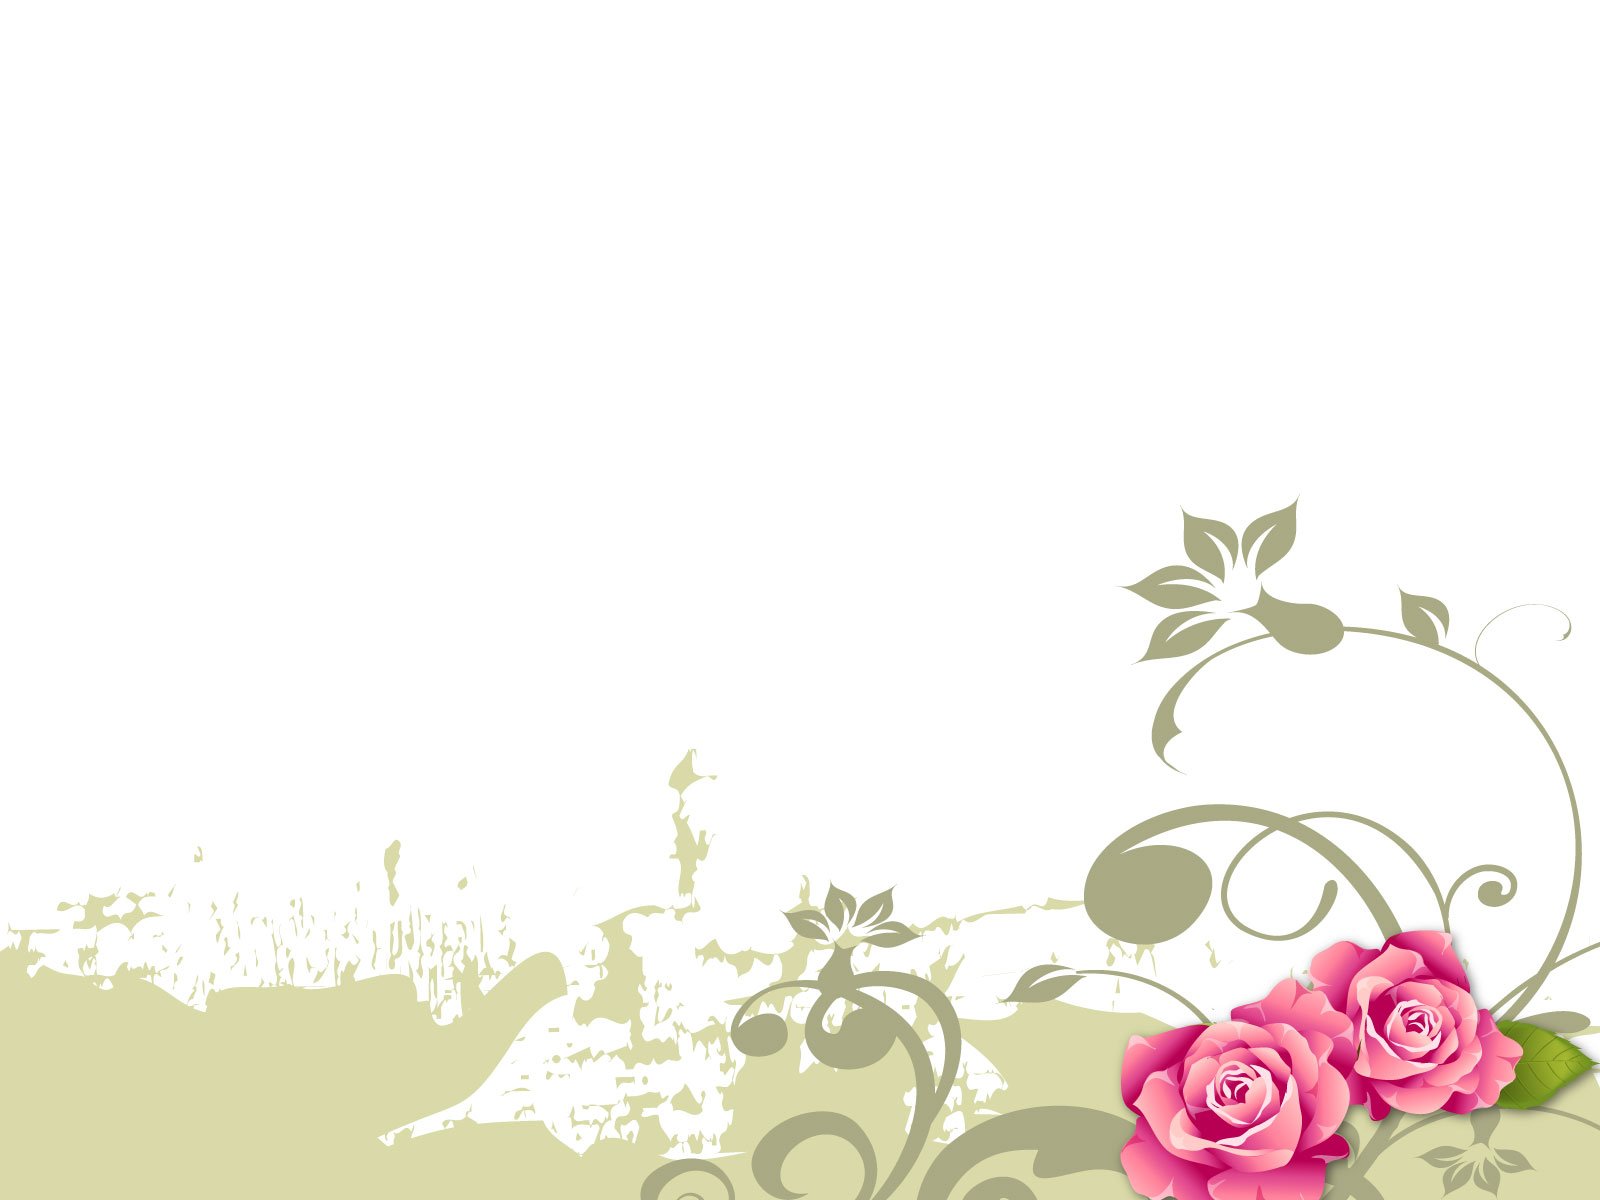 flower background designs free downloadjpg